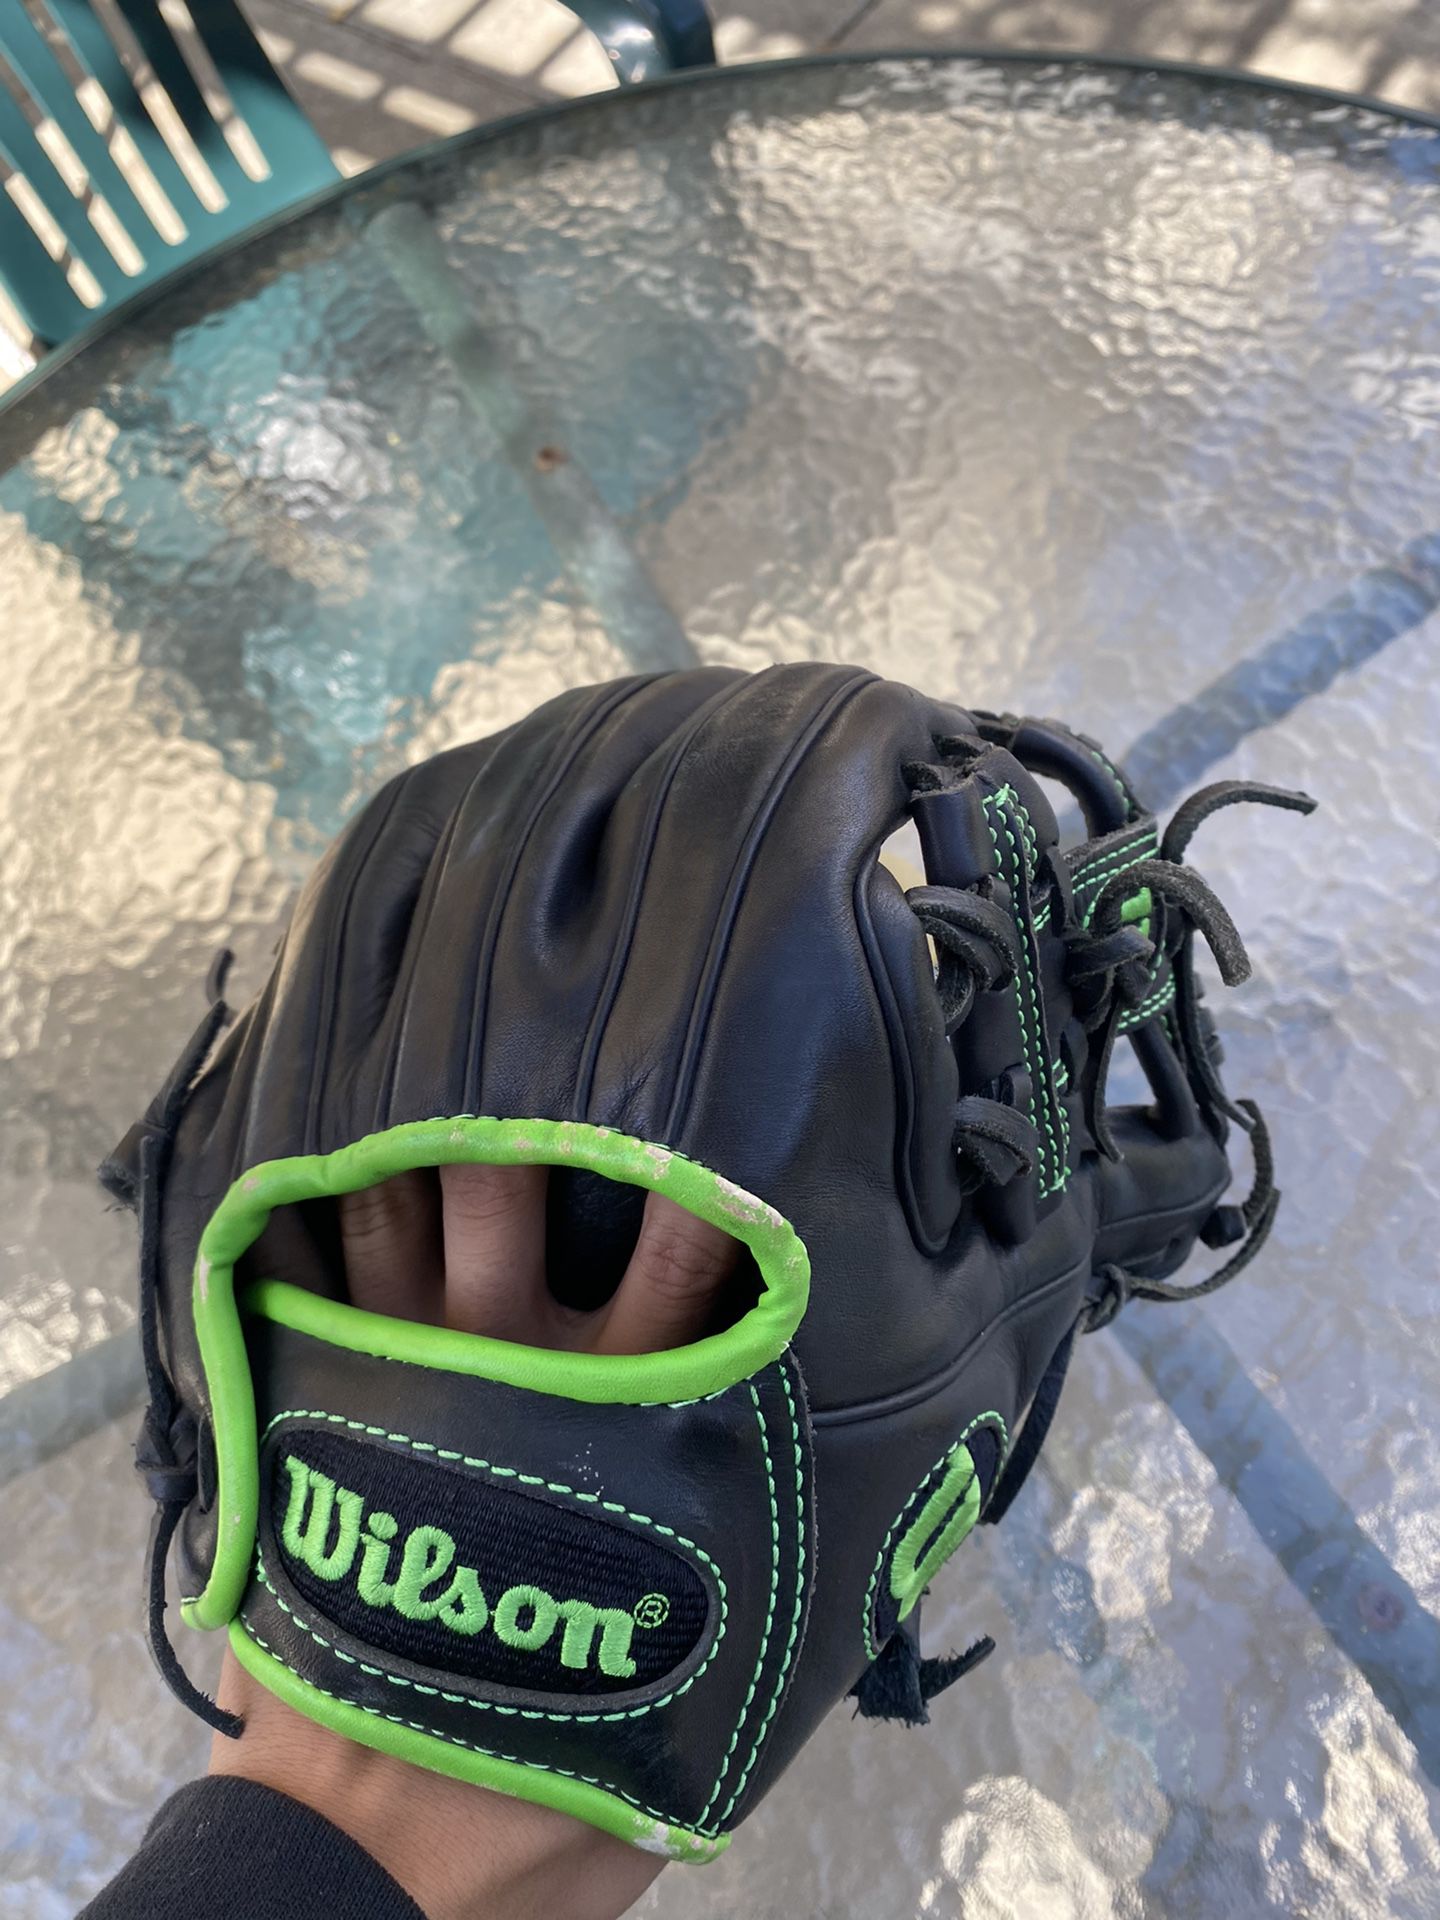 wilson baseball glove